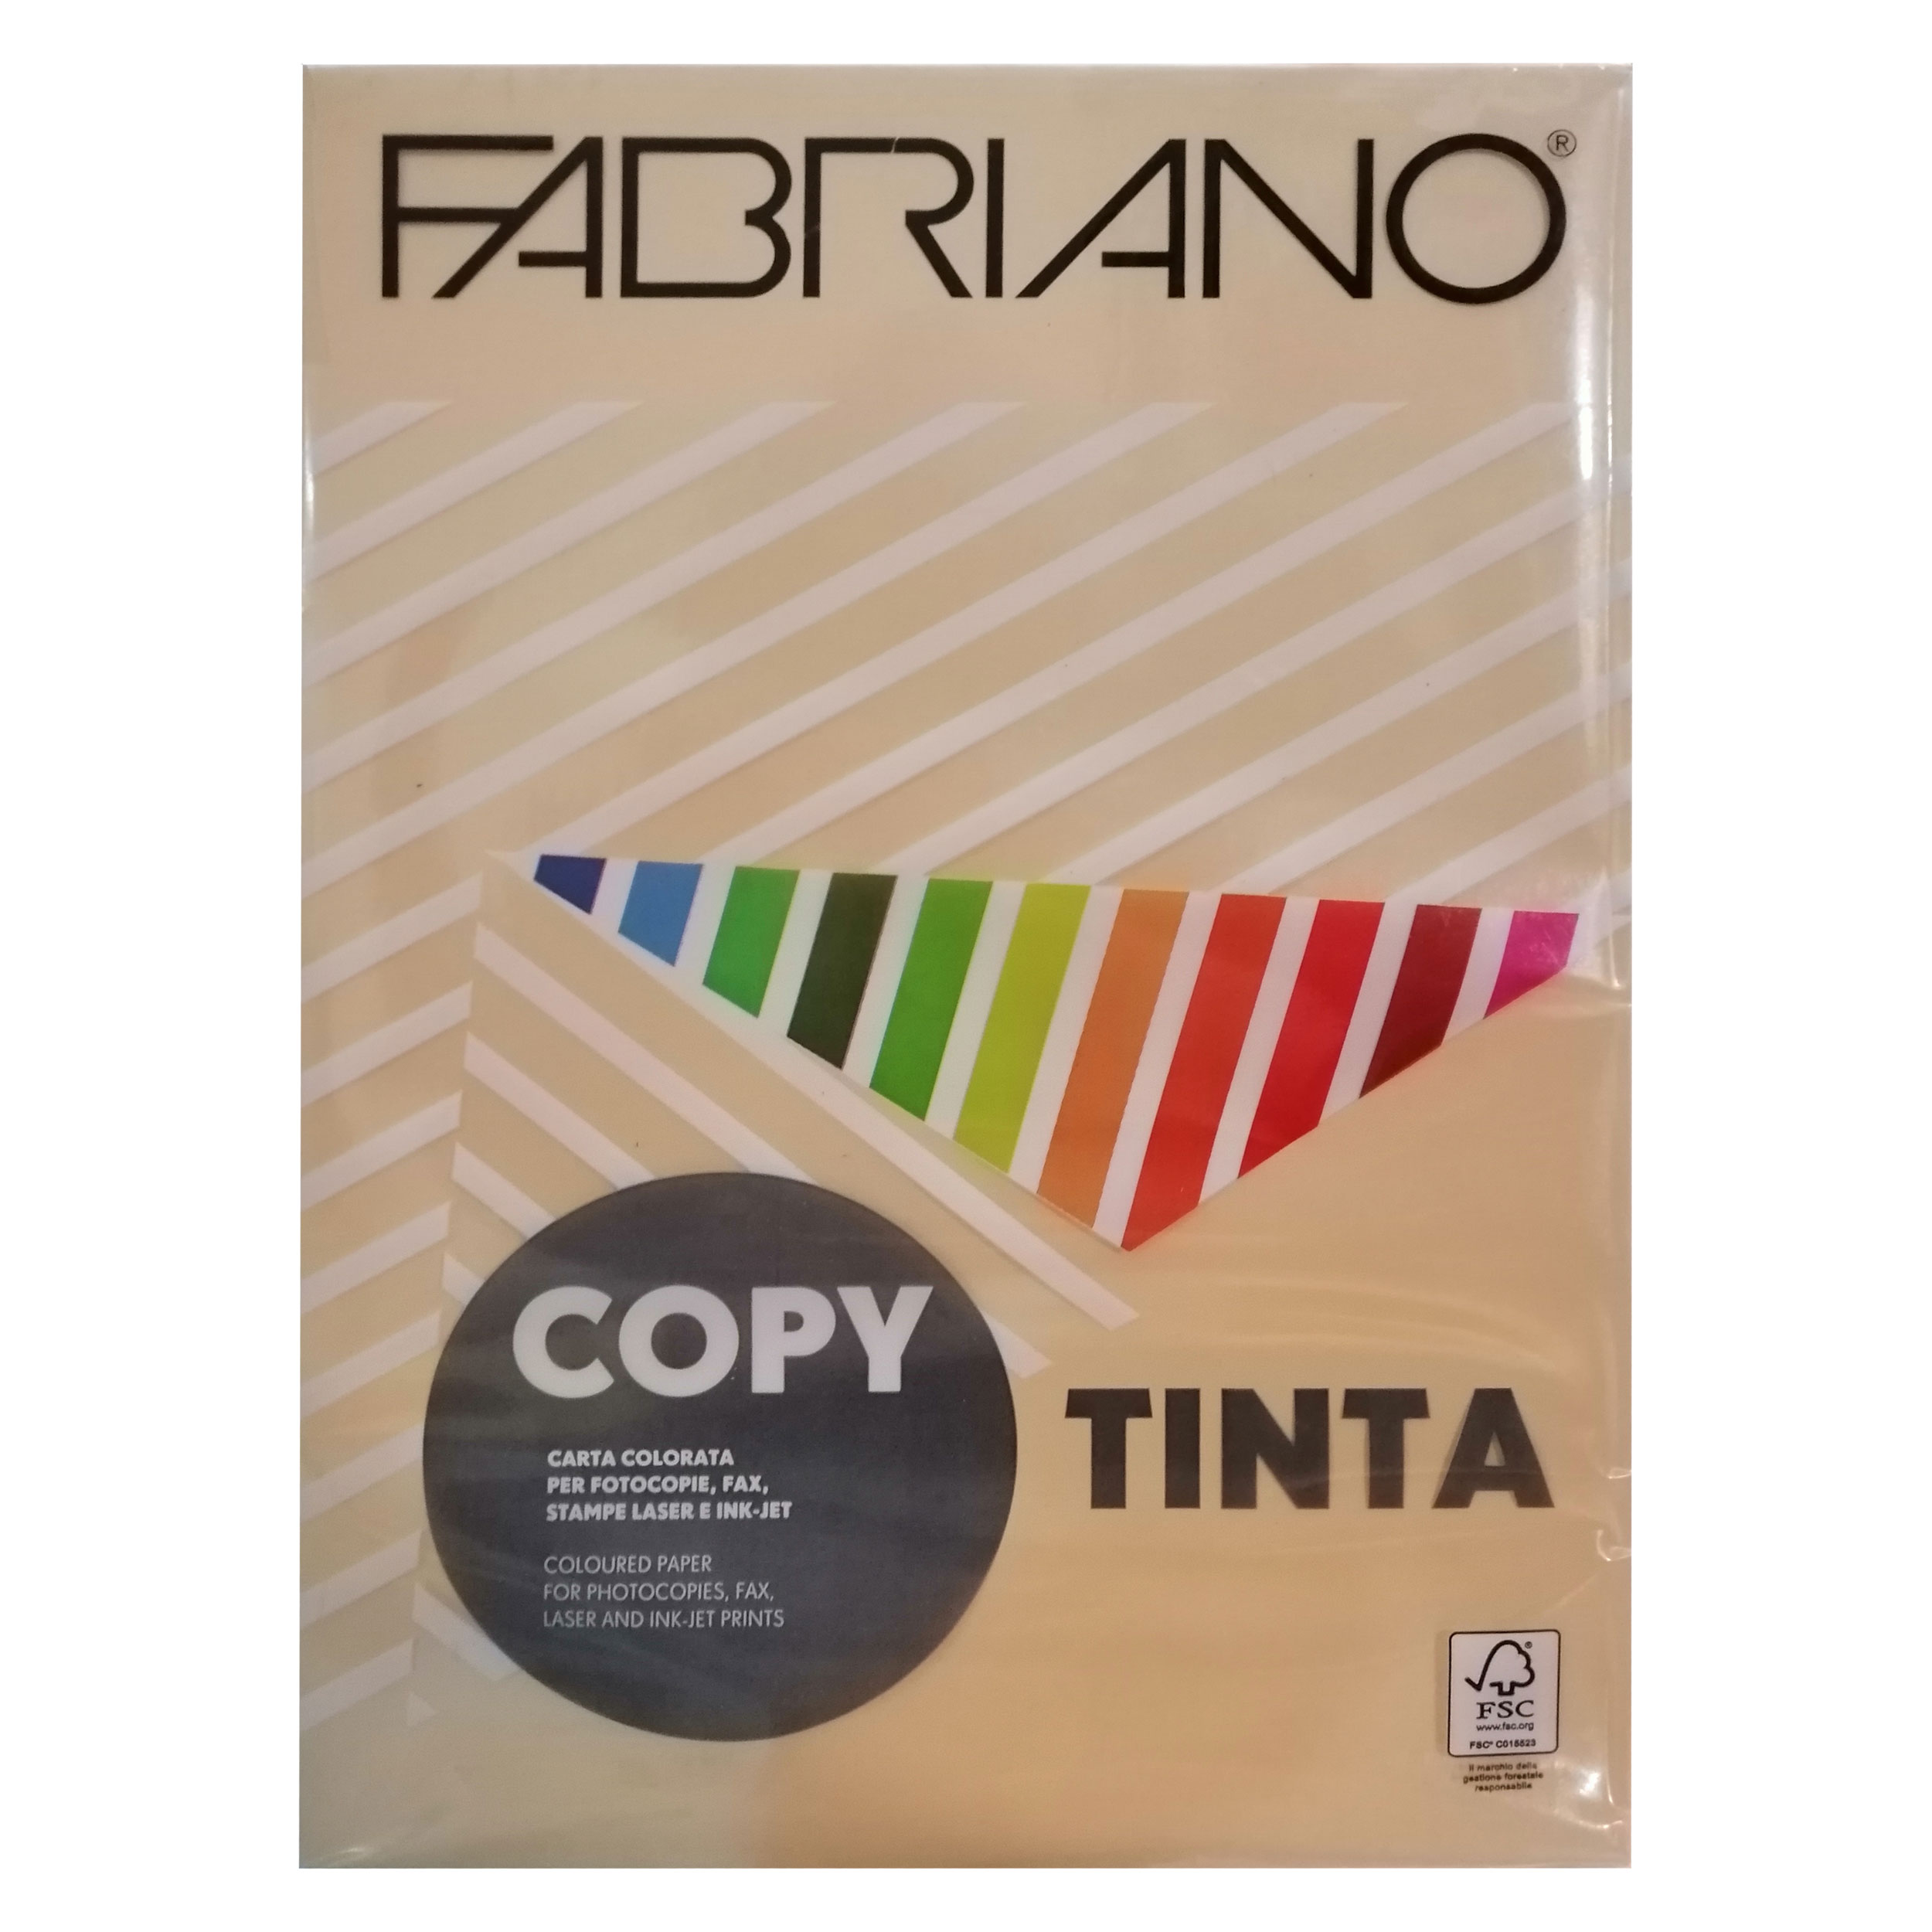 مقوا رنگی فابریانو مدل Tinta سایز 30x21 سانتی متر بسته 250 عددی